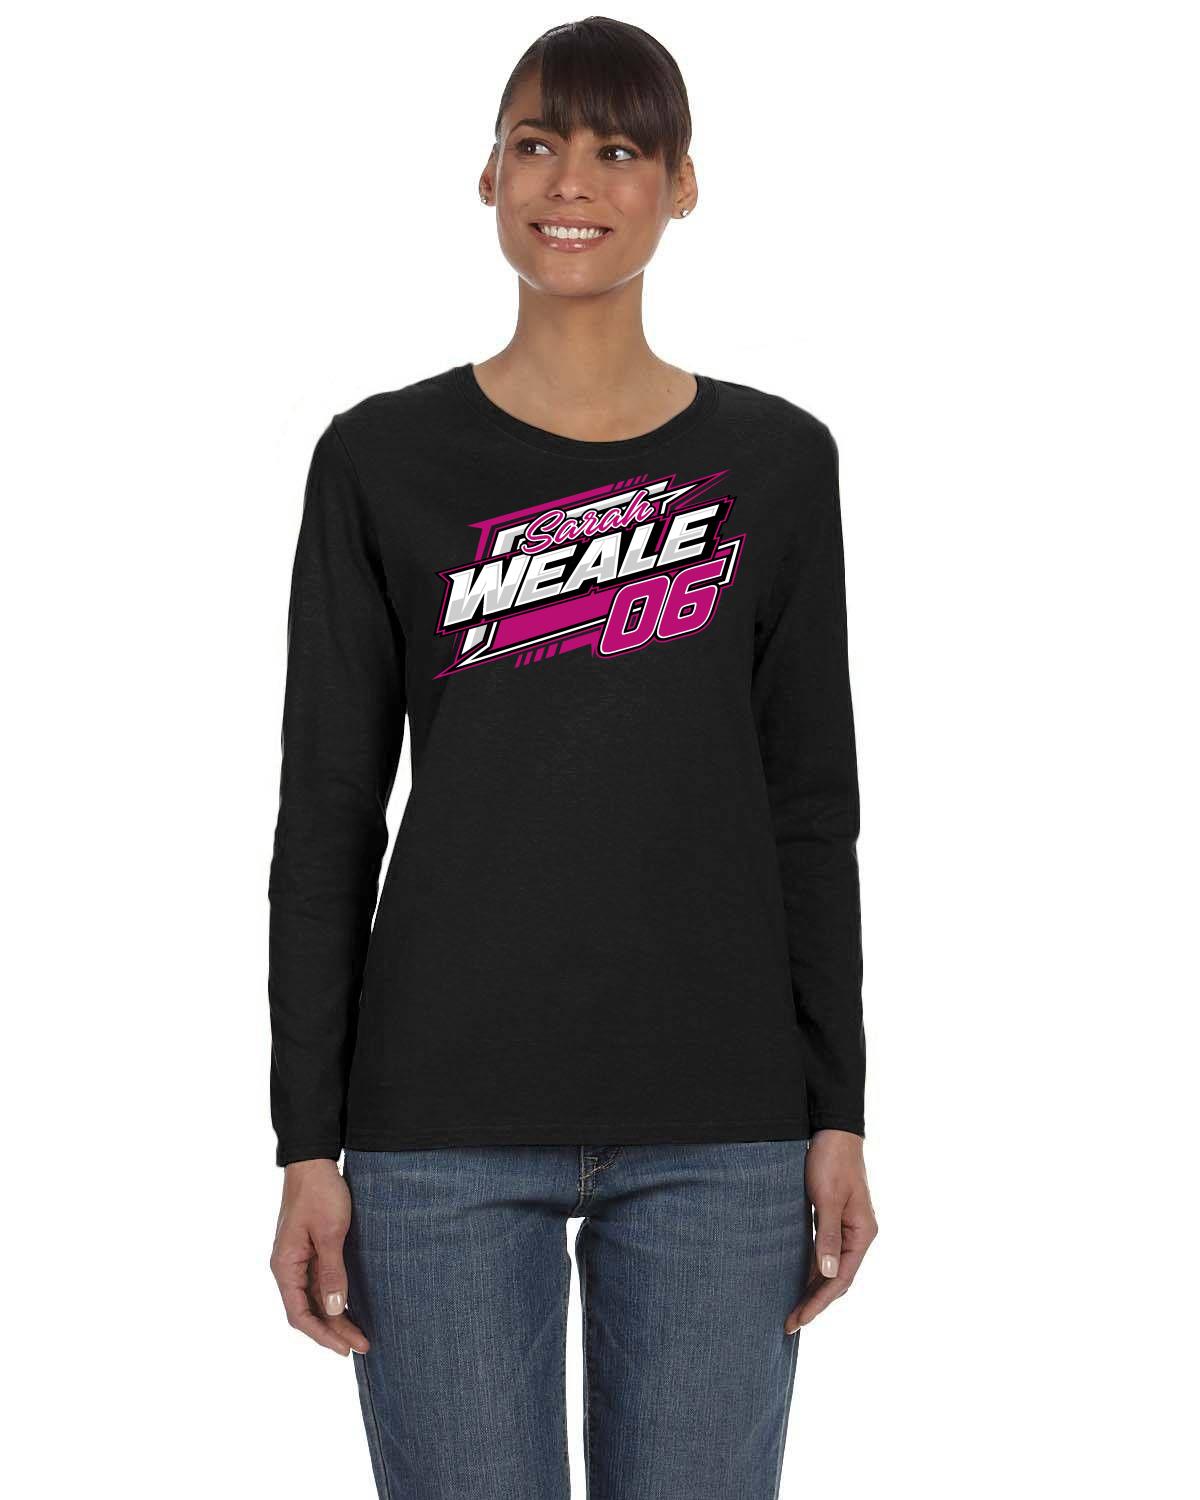 Sarah Weale Racing Ladies' Long-Sleeve T-Shirt